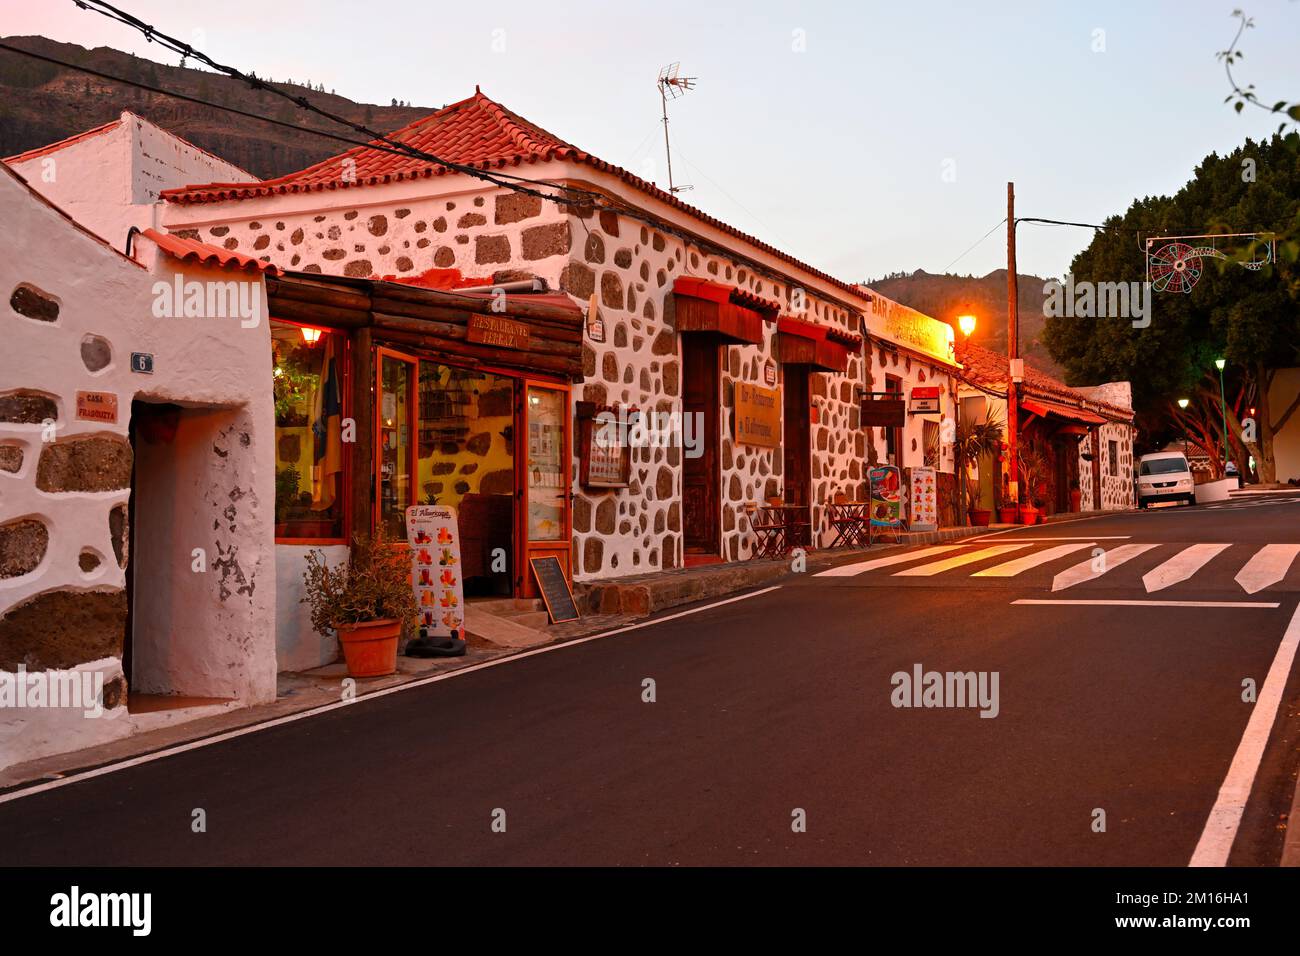 Outside front of Restaurante El Albaricoque in village of Fataga, Las Palmas, Spain Stock Photo